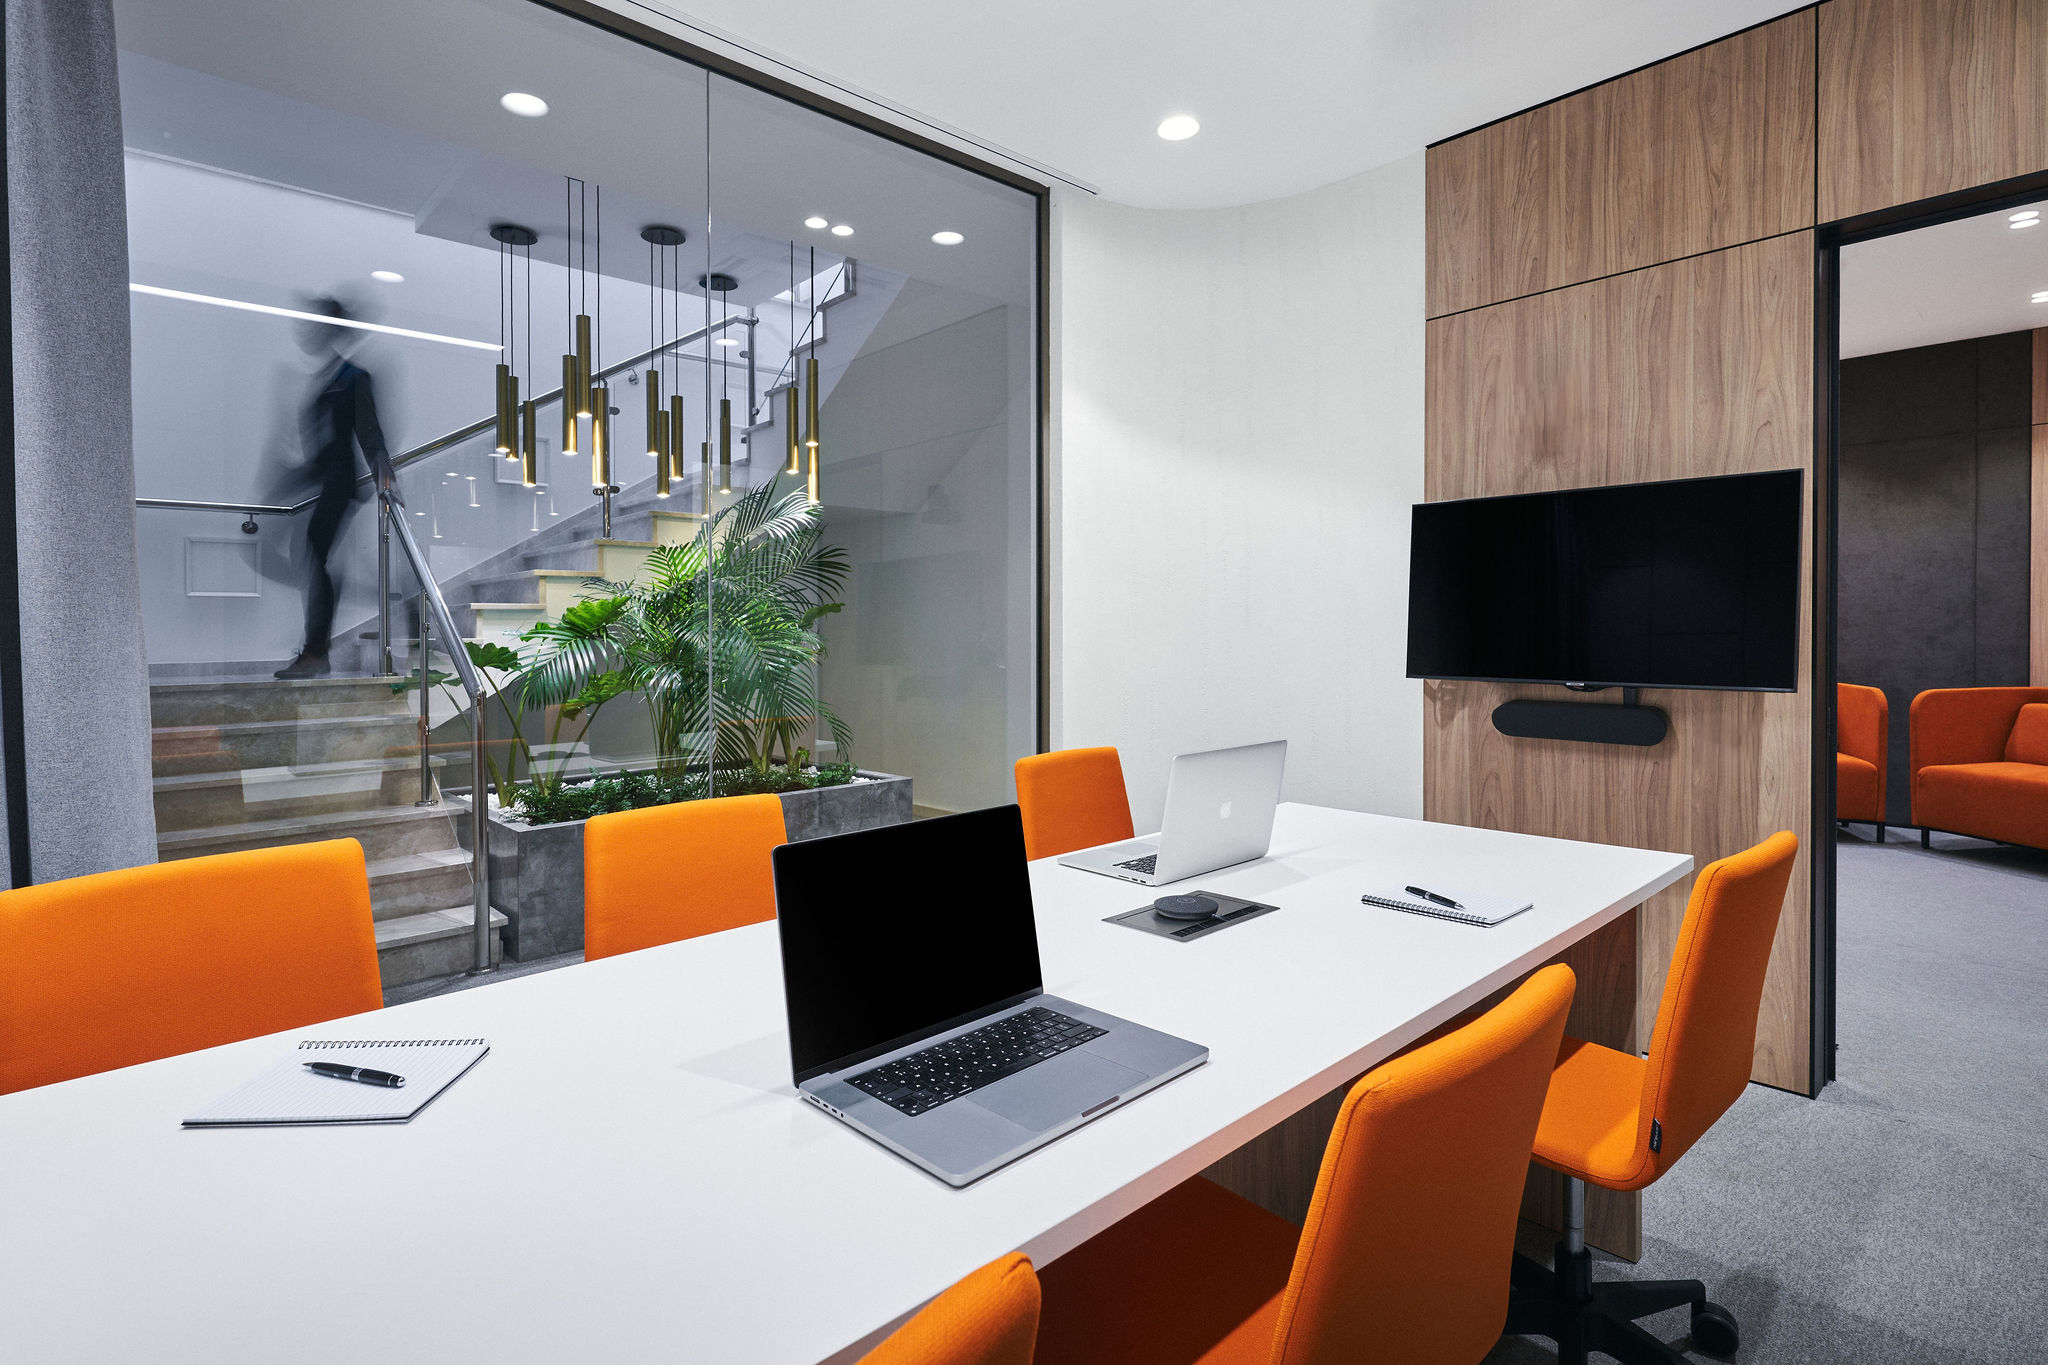 Office interior design 1